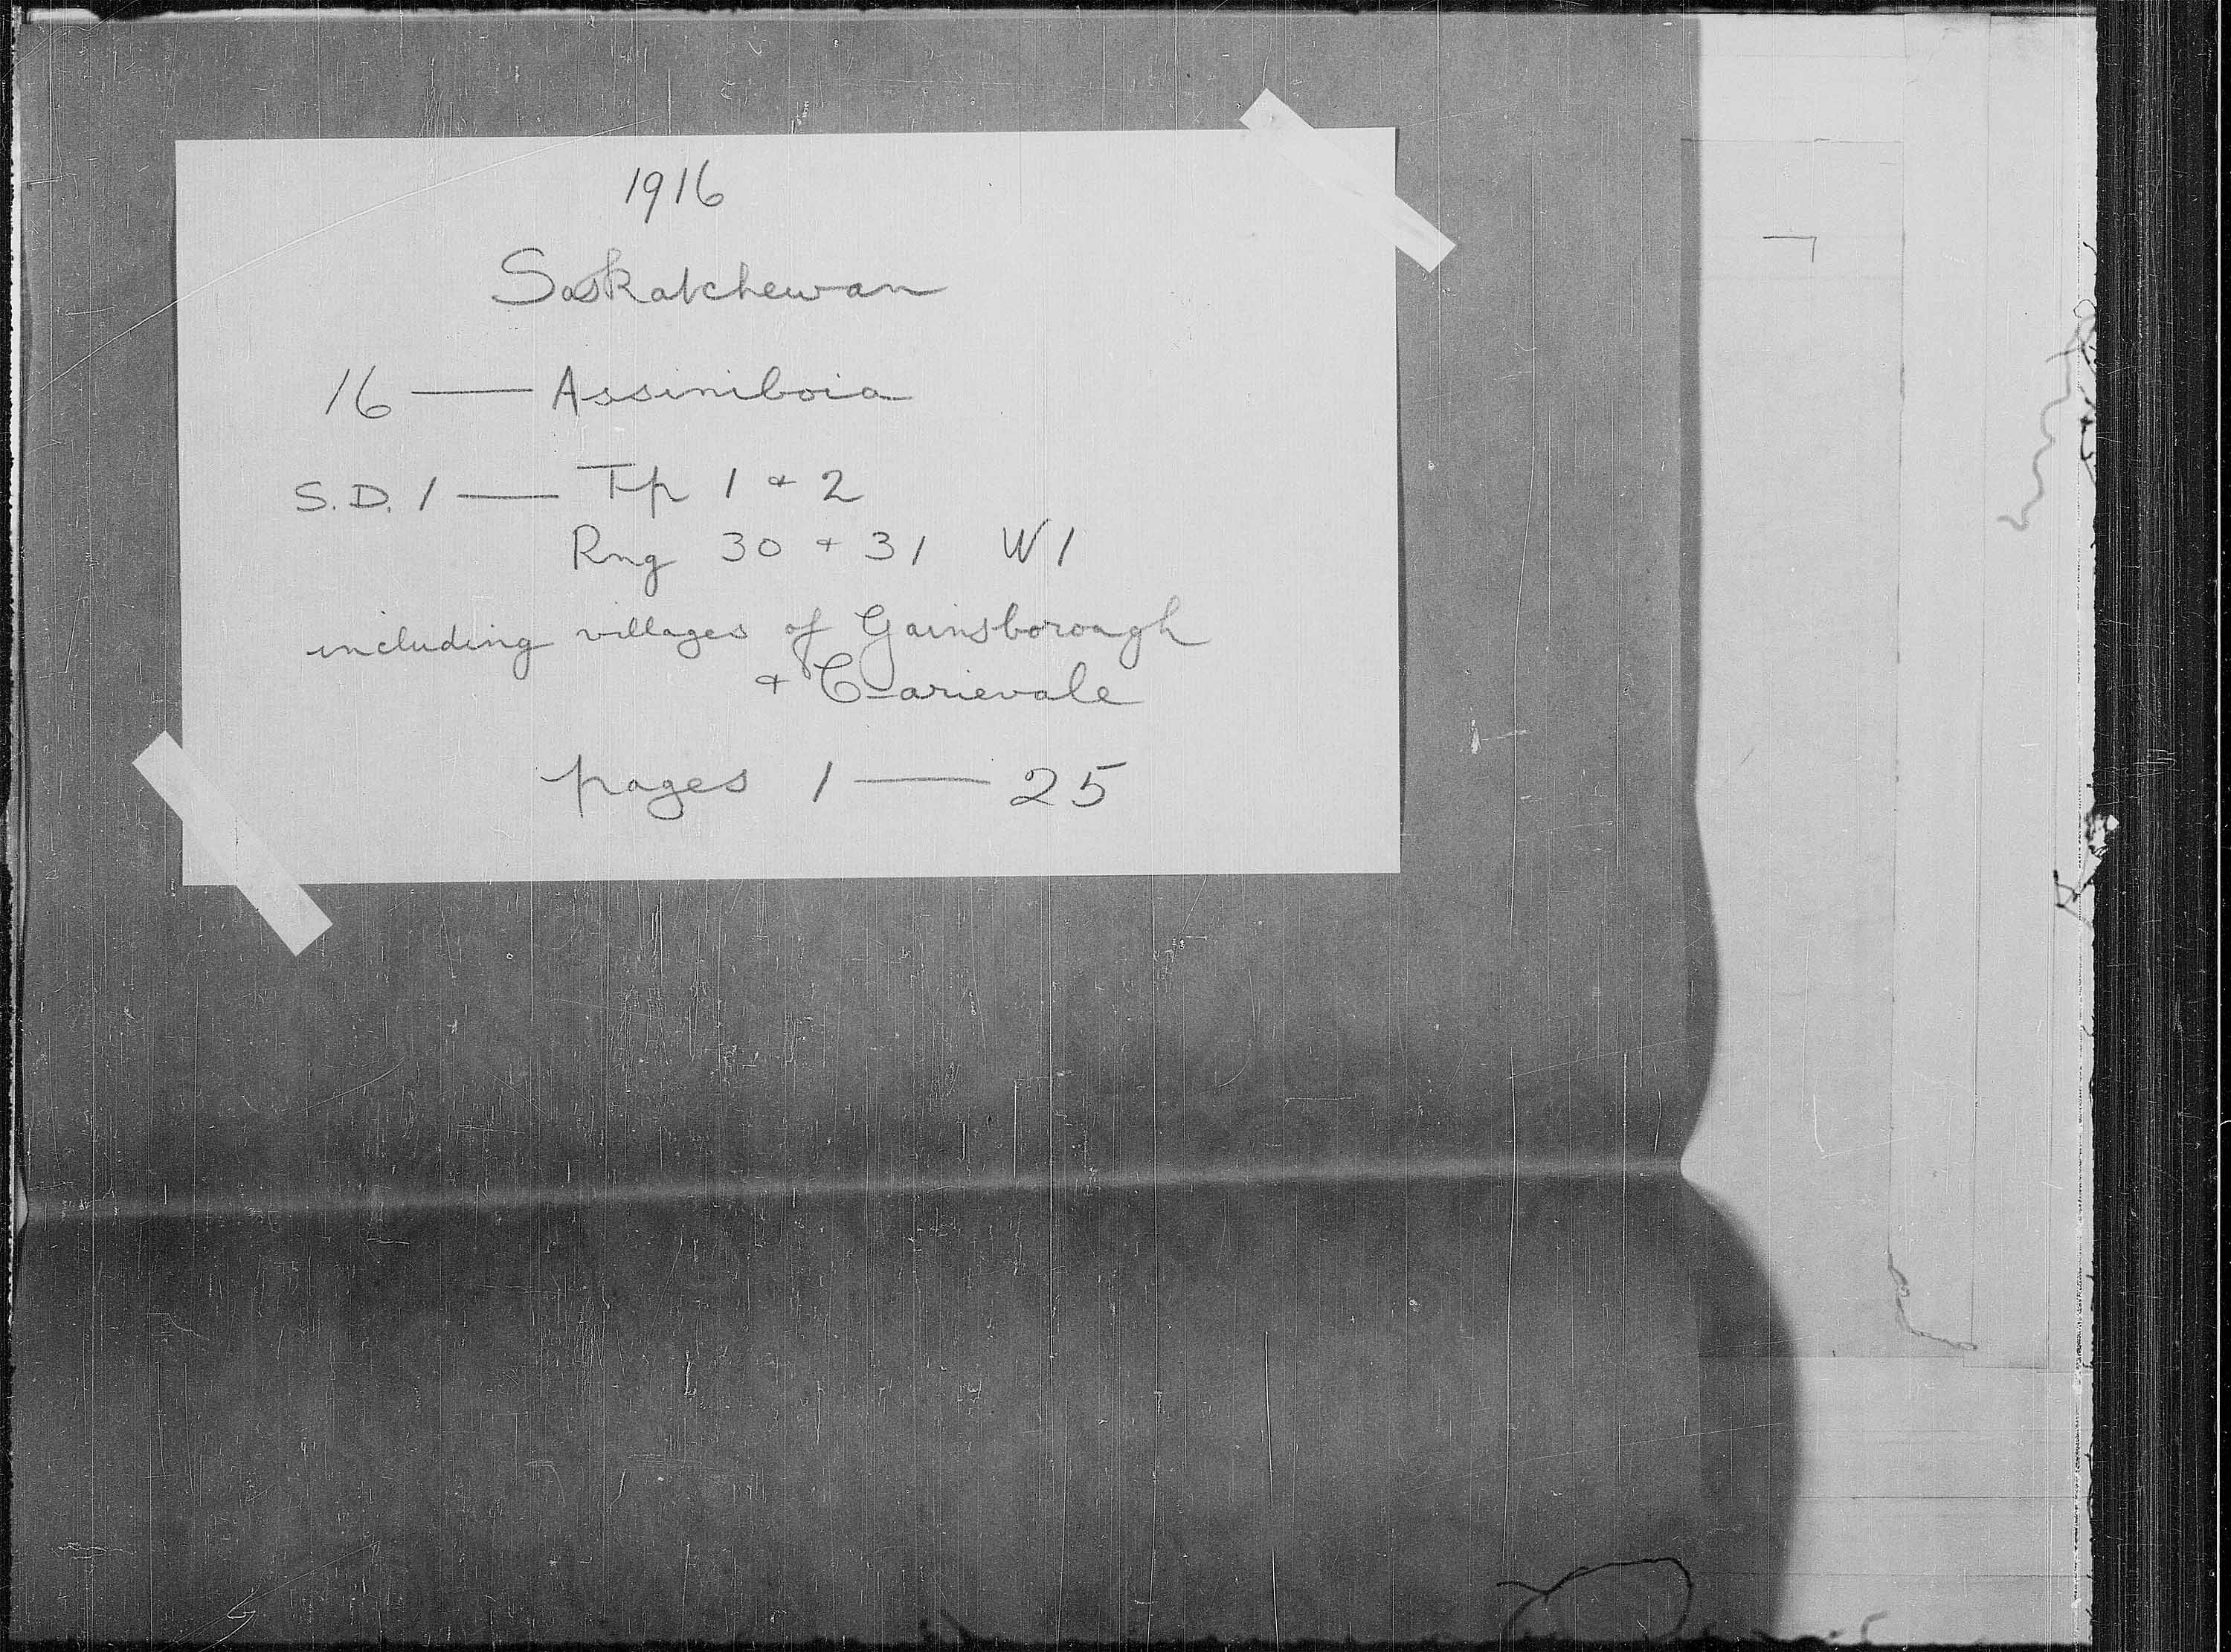 Titre : Recensement des provinces des prairies (1916) - N d'enregistrement Mikan : 3800575 - Microforme : t-21935